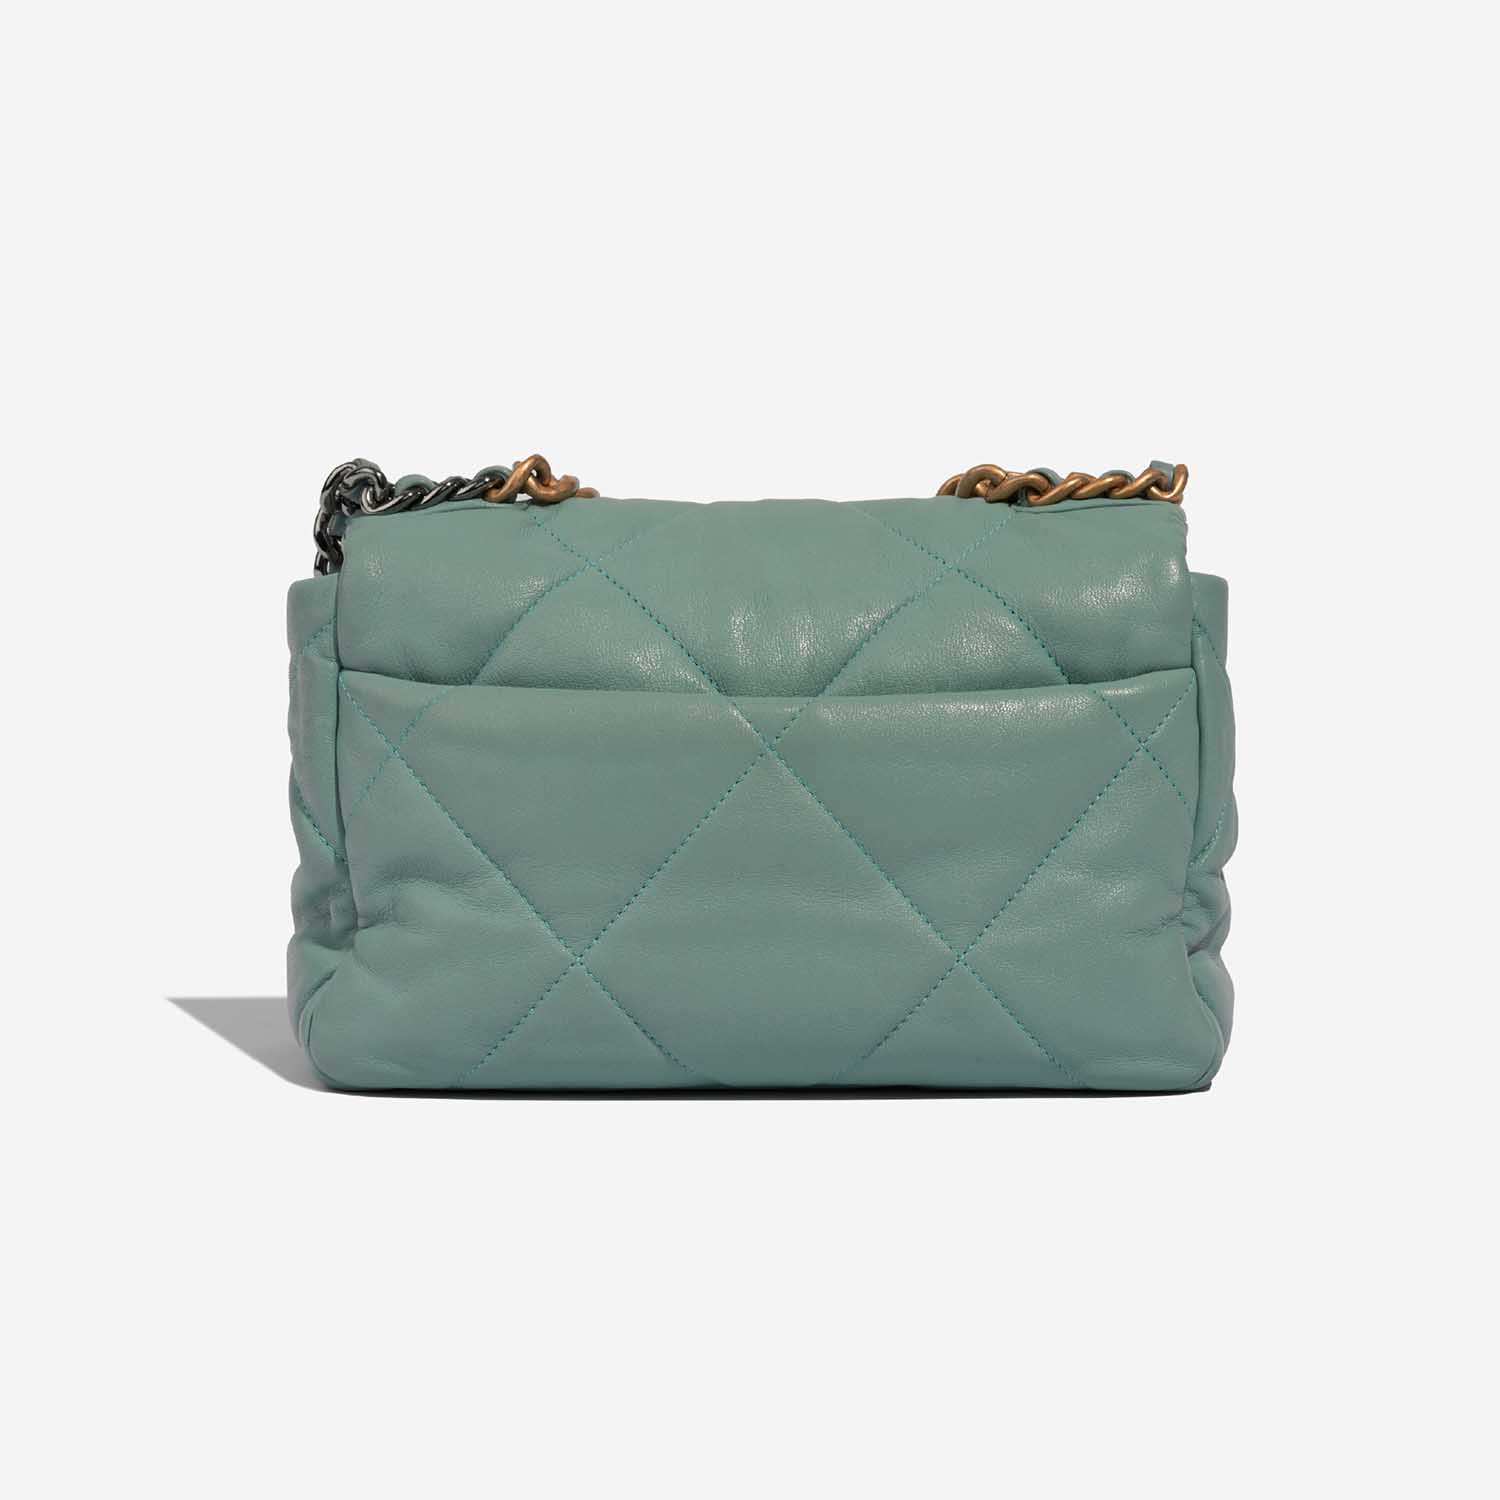 Chanel 19 LightGreen 5B S | Verkaufen Sie Ihre Designertasche auf Saclab.com